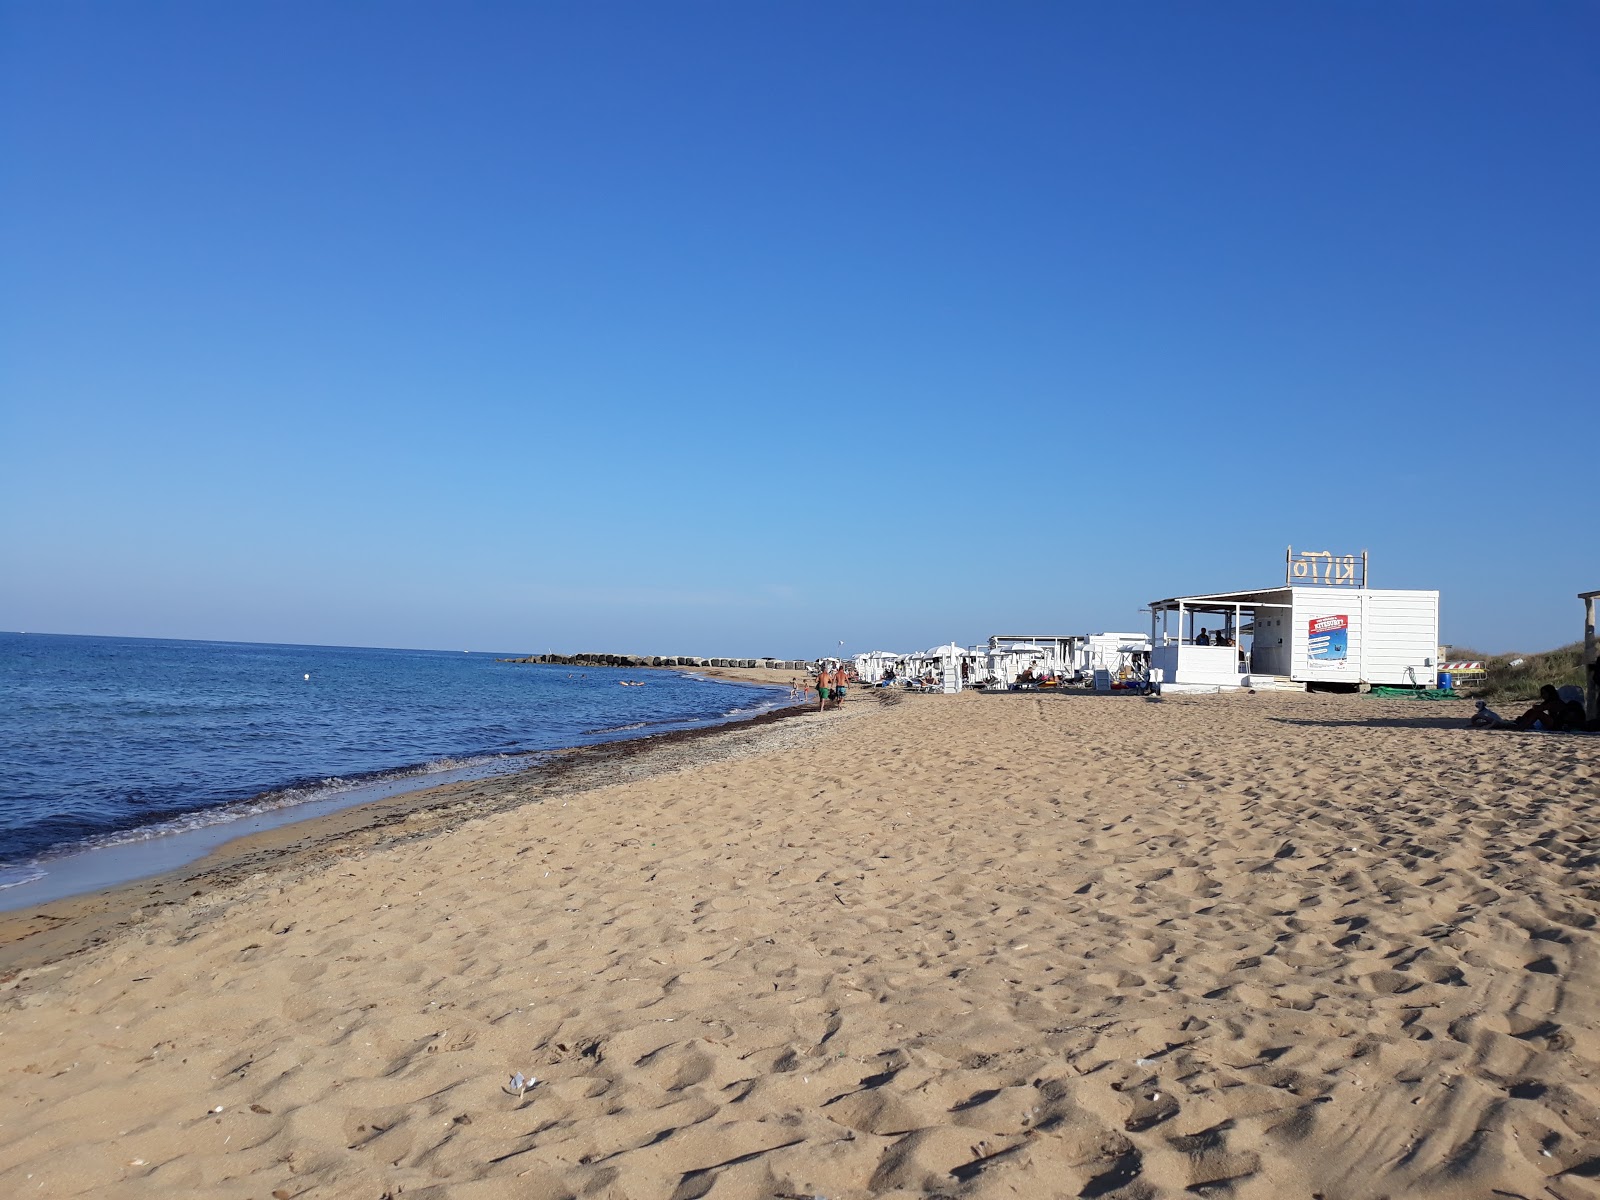 Fotografie cu Istmo beach cu o suprafață de apă pură albastră